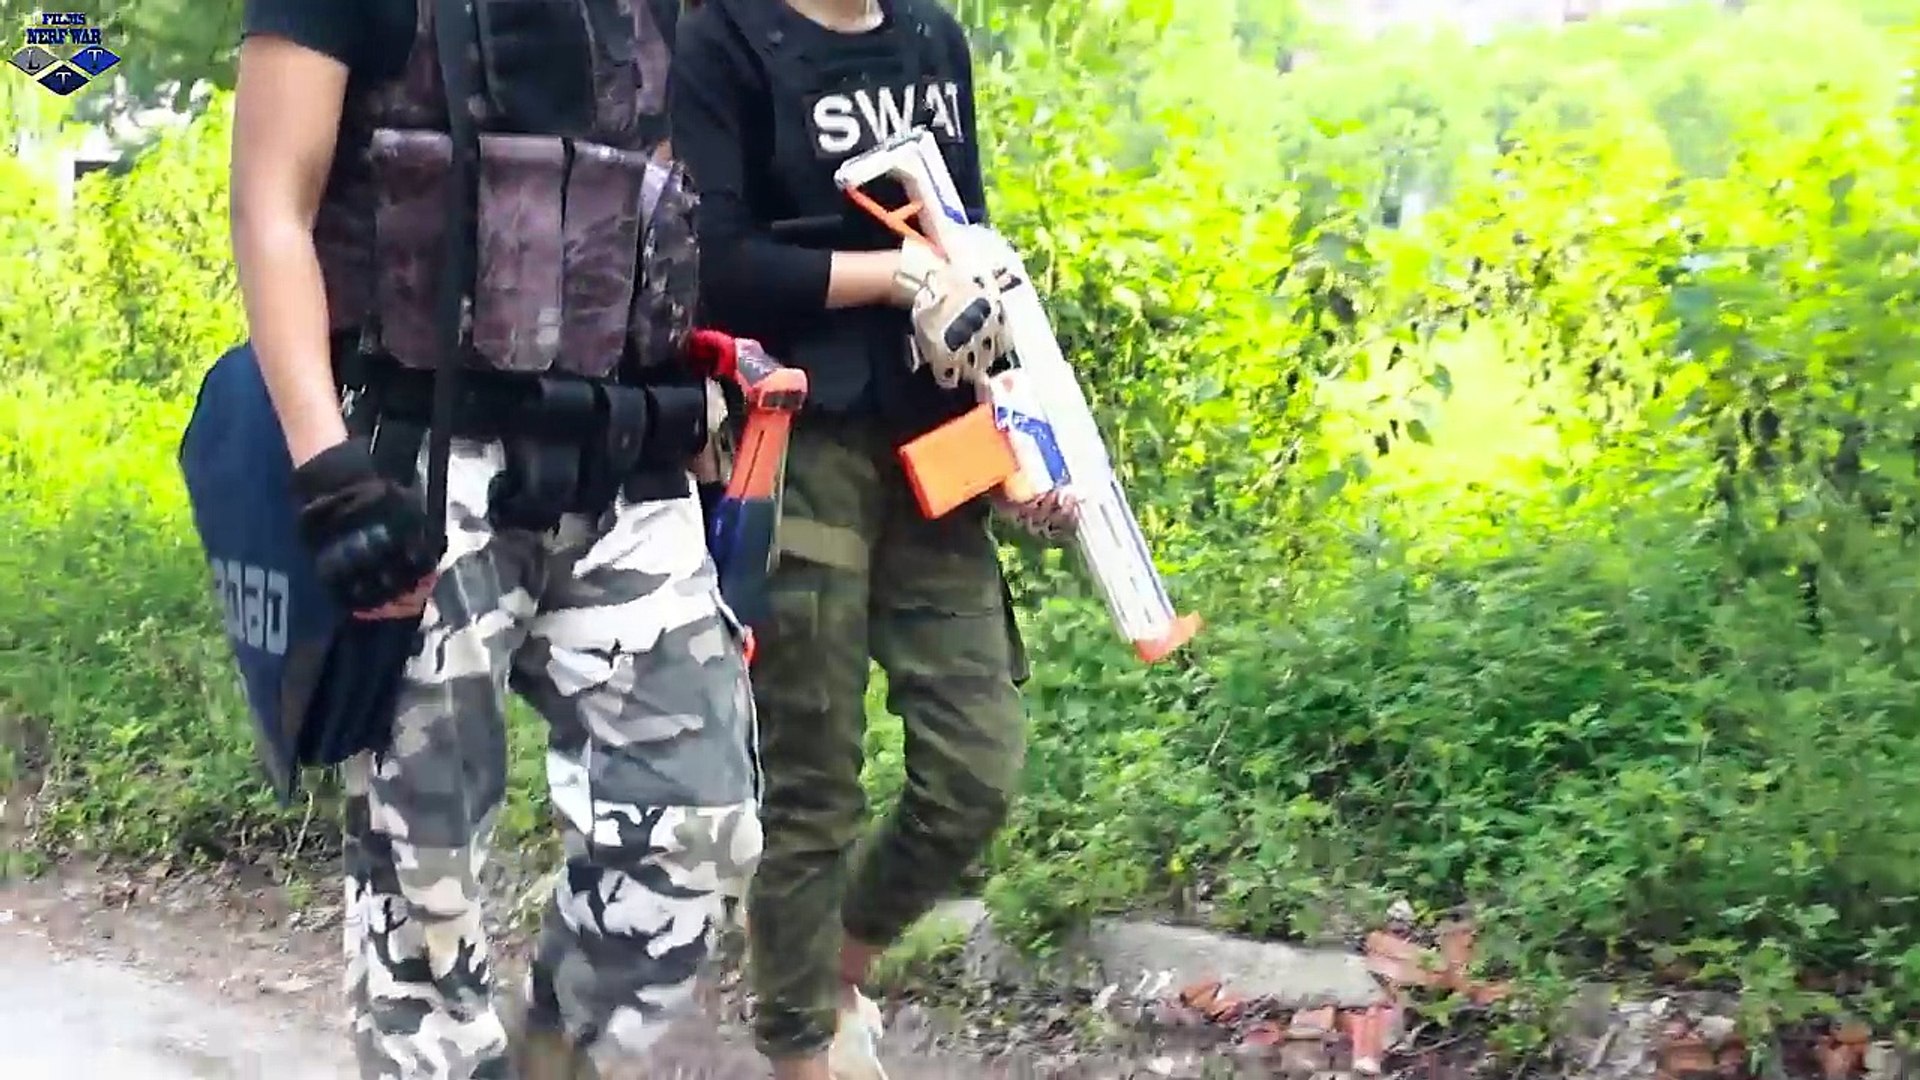 LTT Nerf War : SEAL X Warriors Nerf Guns Fight Criminal Group Bandits Water  - Dailymotion Video